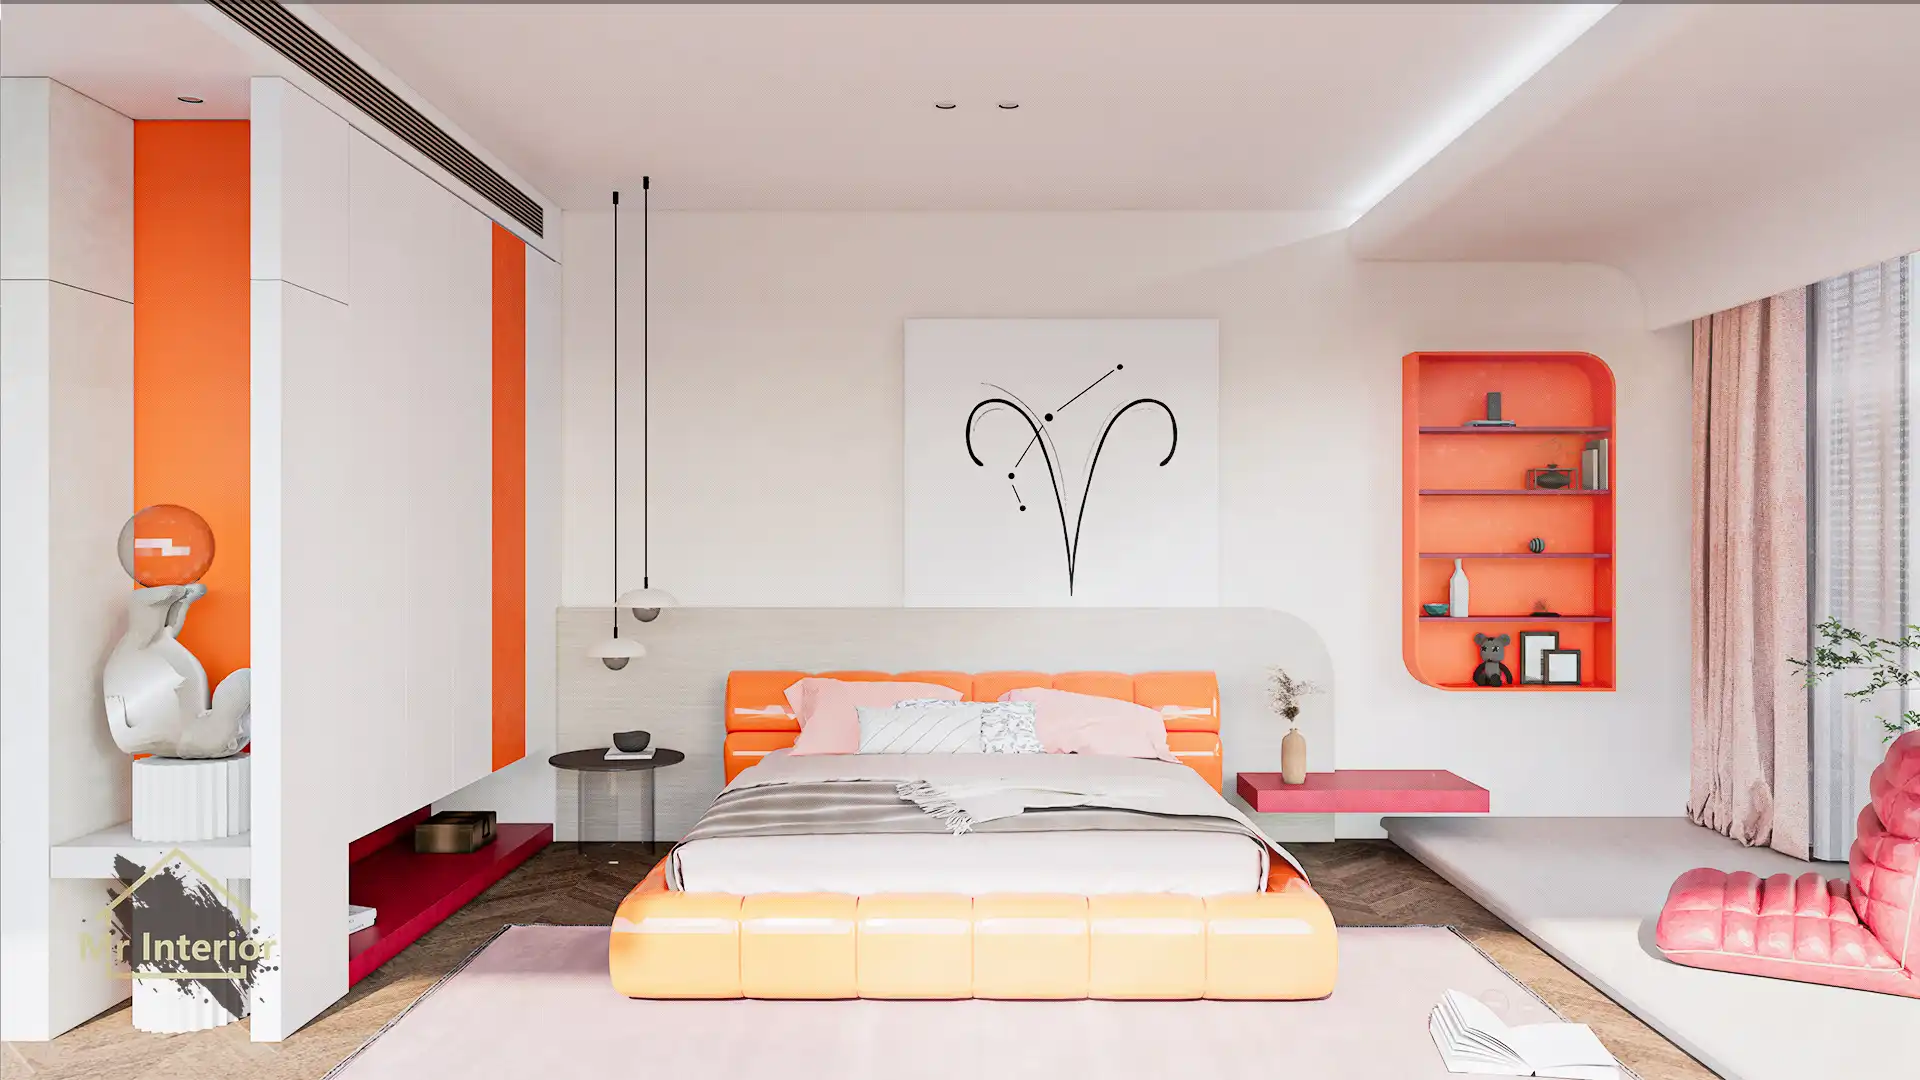 這是白羊座的睡房。設計風格探用了現代風；色調明亮，米色主調，紅色及橙色點綴；圖片中句含了橙色軟墊雙人床，白色掩門大衣櫃，紅色開方式晝架，白色及橙色特色牆身，紅色懶人梳化，白羊座裝飾及自然光等。Mr Interior室內設計裝修及傢俬風格。